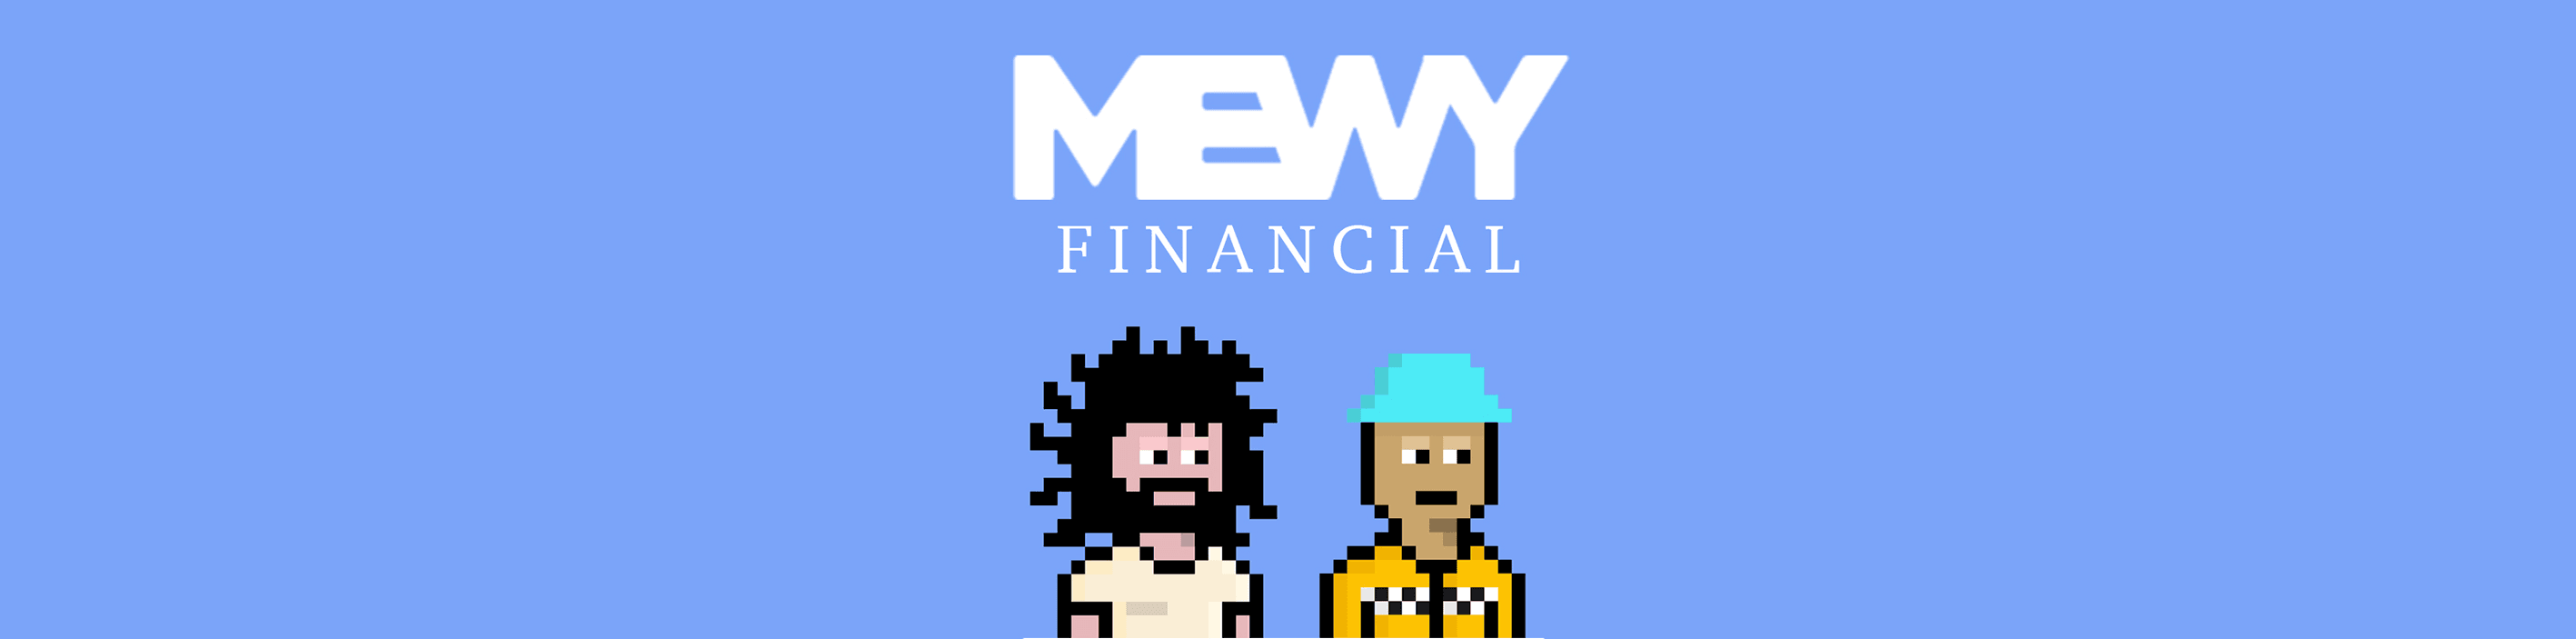 mewyfinancial banner